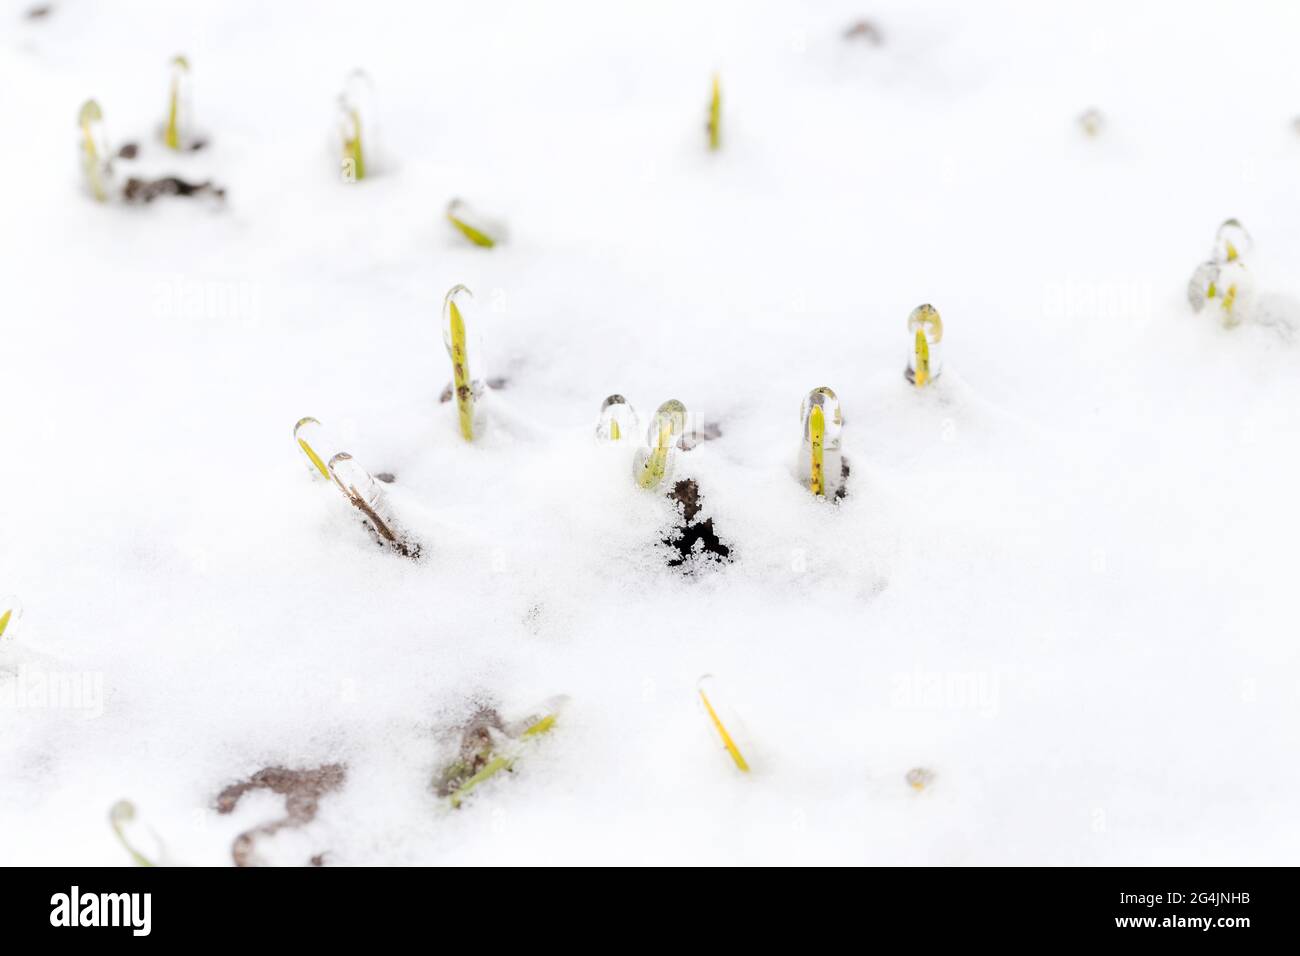 Das Weizenfeld ist im Winter mit Schnee bedeckt. Winterweizen während des Frosts mit Eis bedeckt. Grünes Gras, Rasen unter Schnee. Ernte in Kälte. Wachsende Körner c Stockfoto